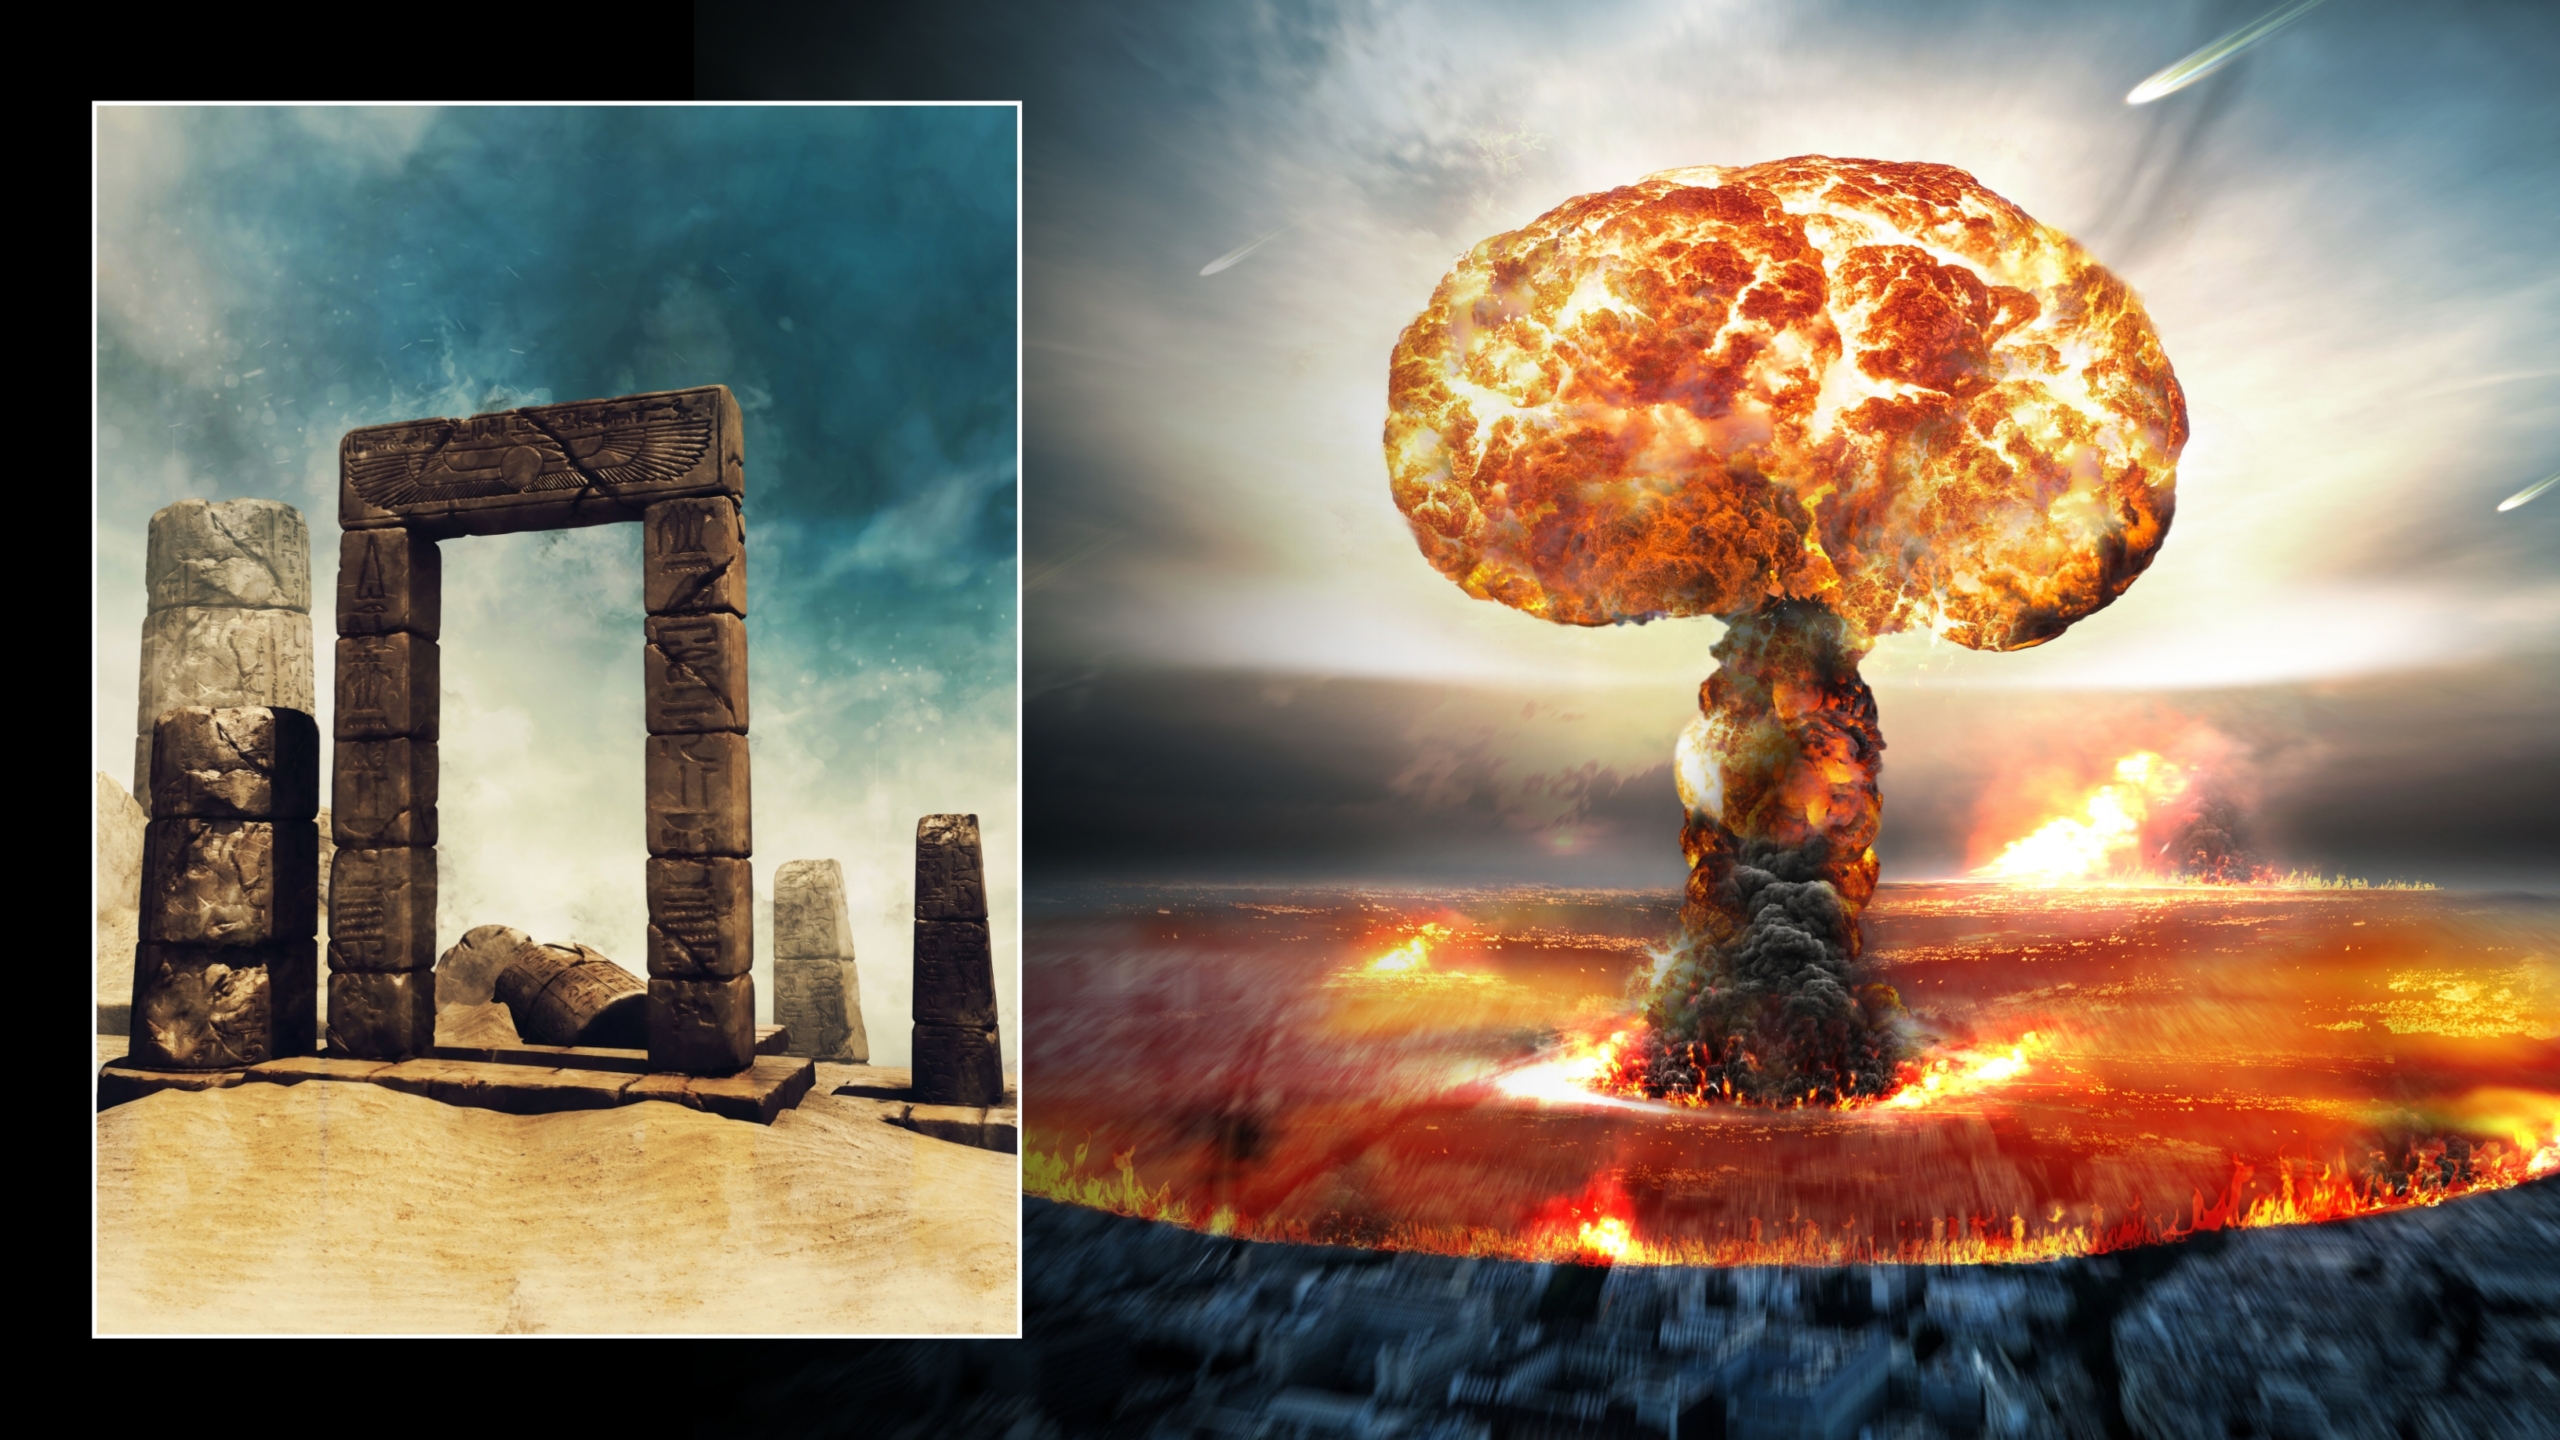 Ilustracije atomske eksplozije i drevne ruševine u pustinji. © Zasluge za sliku: Obsidianfantacy & Razvan lonut Dragomirescu | Licencirano od DreamsTime.com (uredničko/komercijalno korištenje Stock Photos)